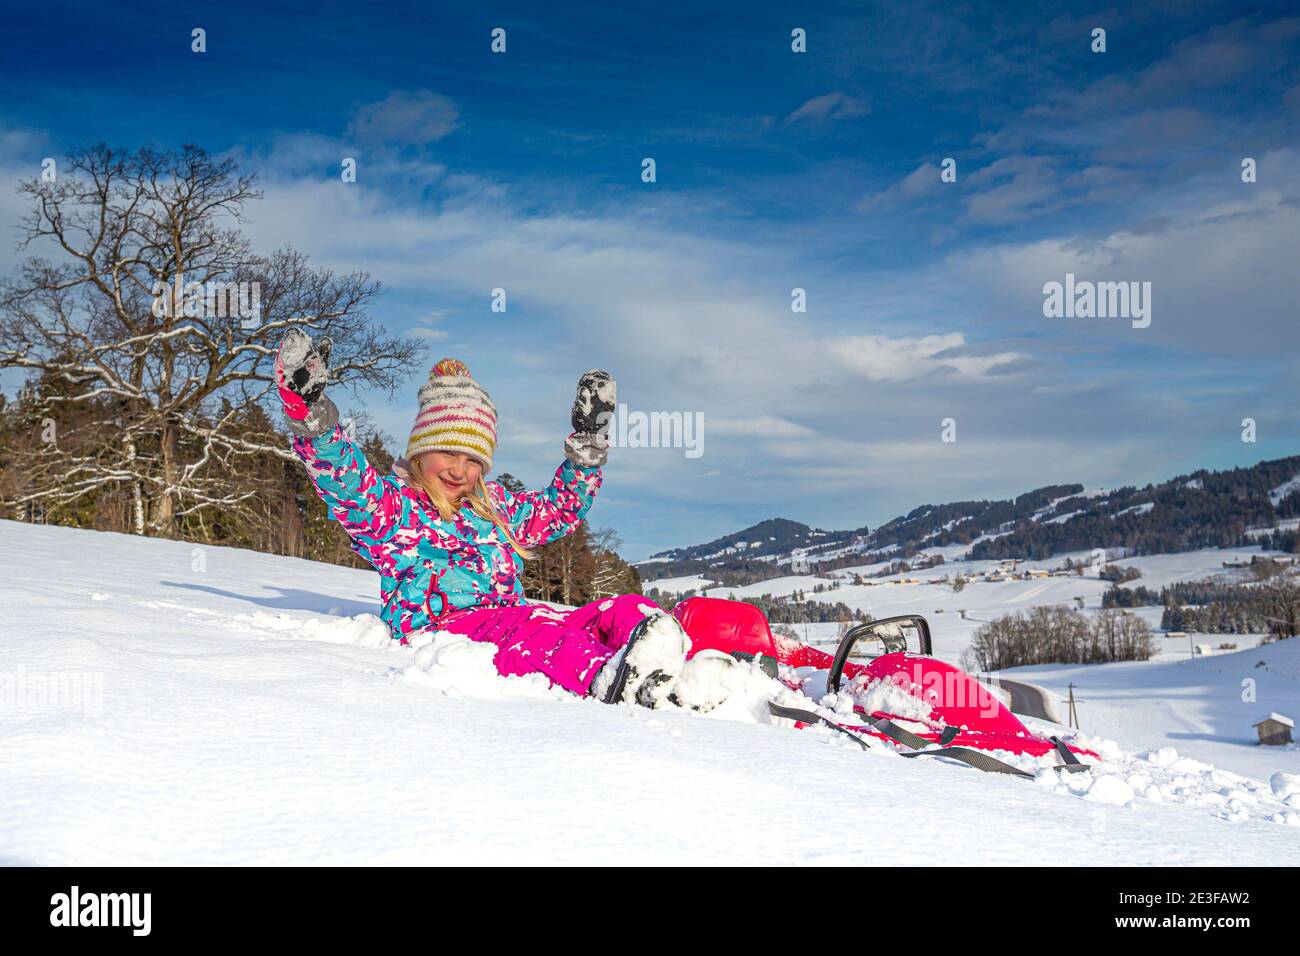 Allemagne, Bavière, Allgäu, jeune fille qui profite d'une journée d'hiver en traîneau Banque D'Images